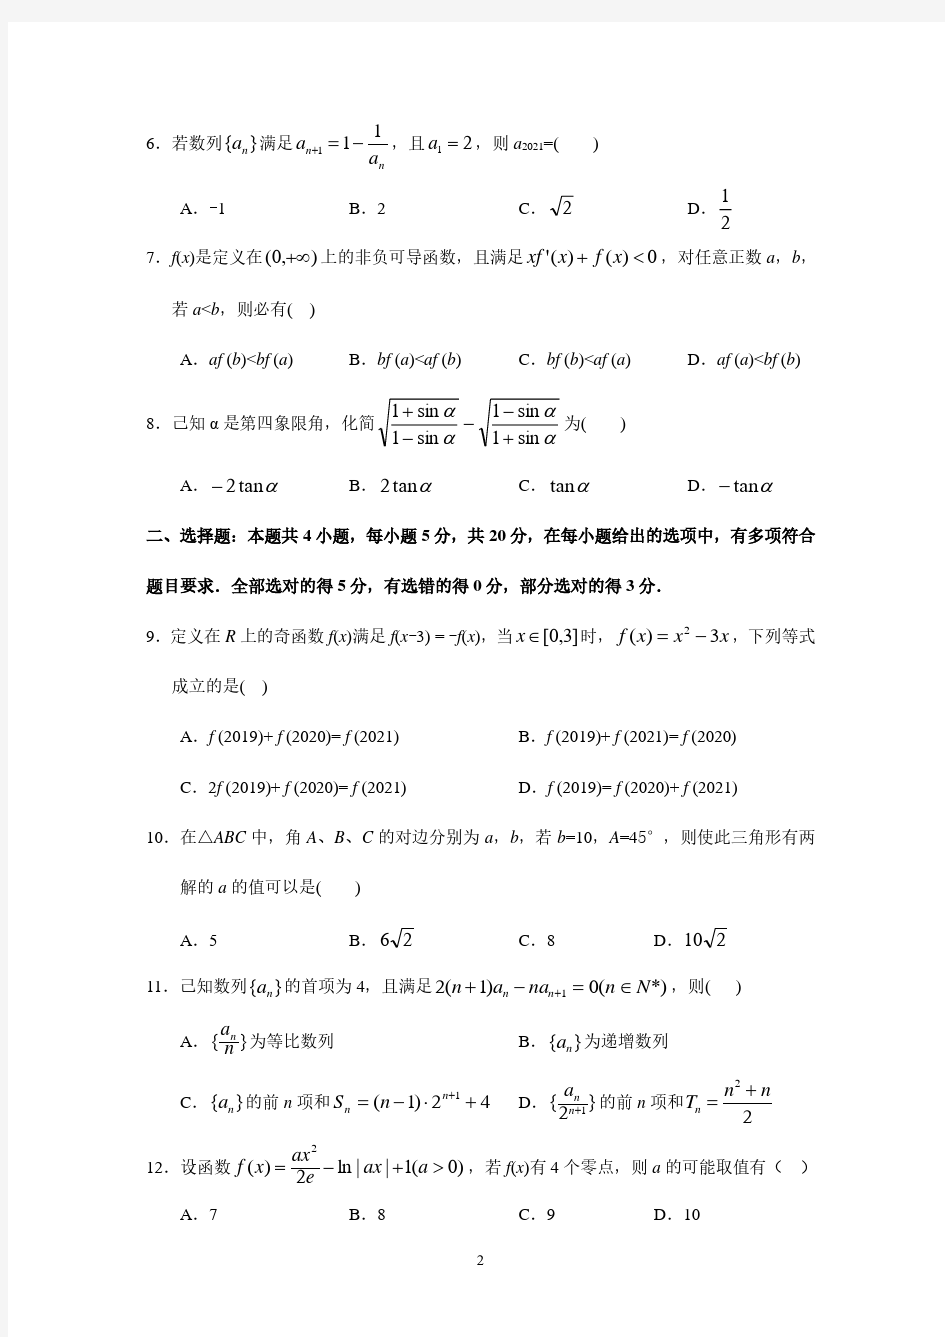 广东省华南师范大学附属中学2021届高三数学综合测试(二)